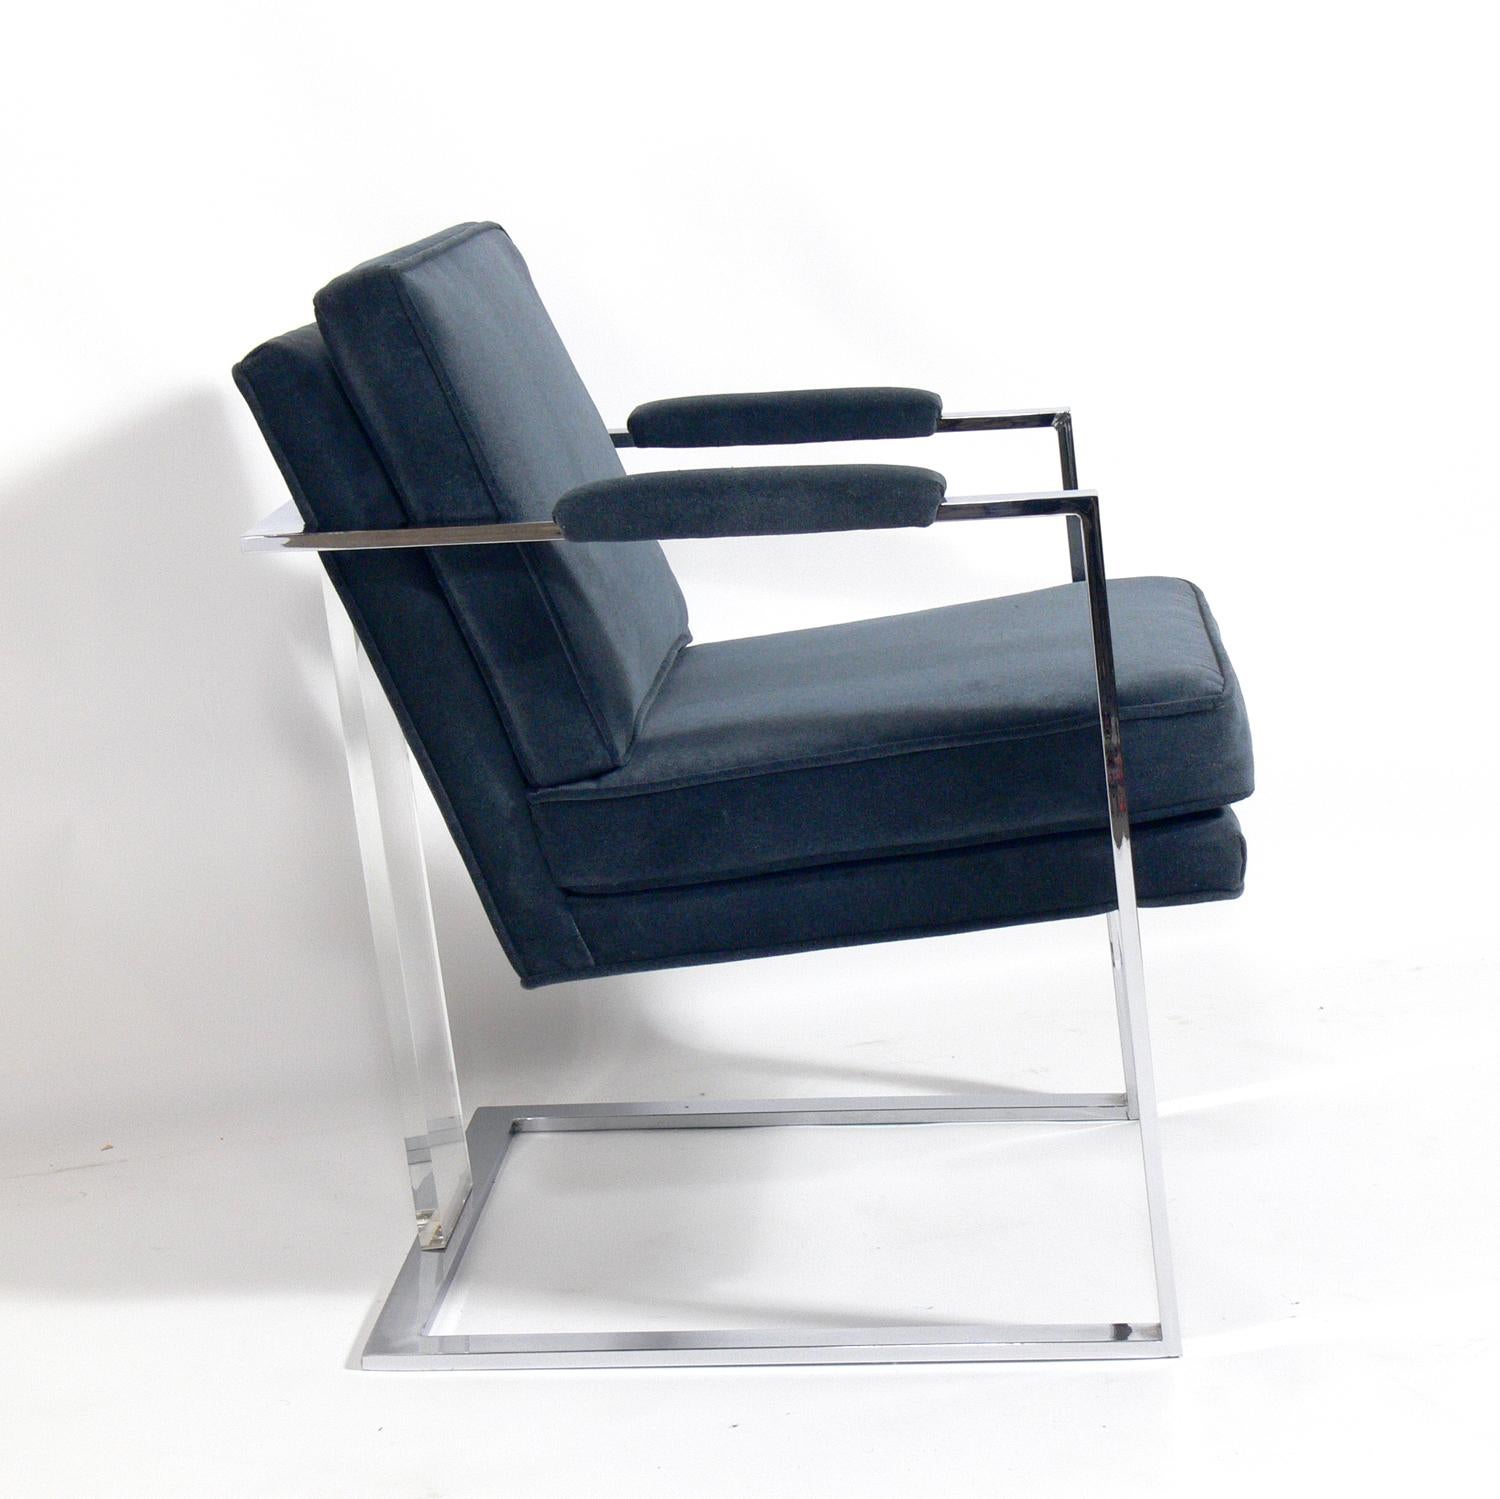 Loungesessel aus Chrom und Lucite aus der Mitte des Jahrhunderts, Milo Baughman zugeschrieben, amerikanisch, ca. 1960er Jahre. Dieser Stuhl wurde vor kurzem in einer samtigen schieferblauen Farbe neu gepolstert.